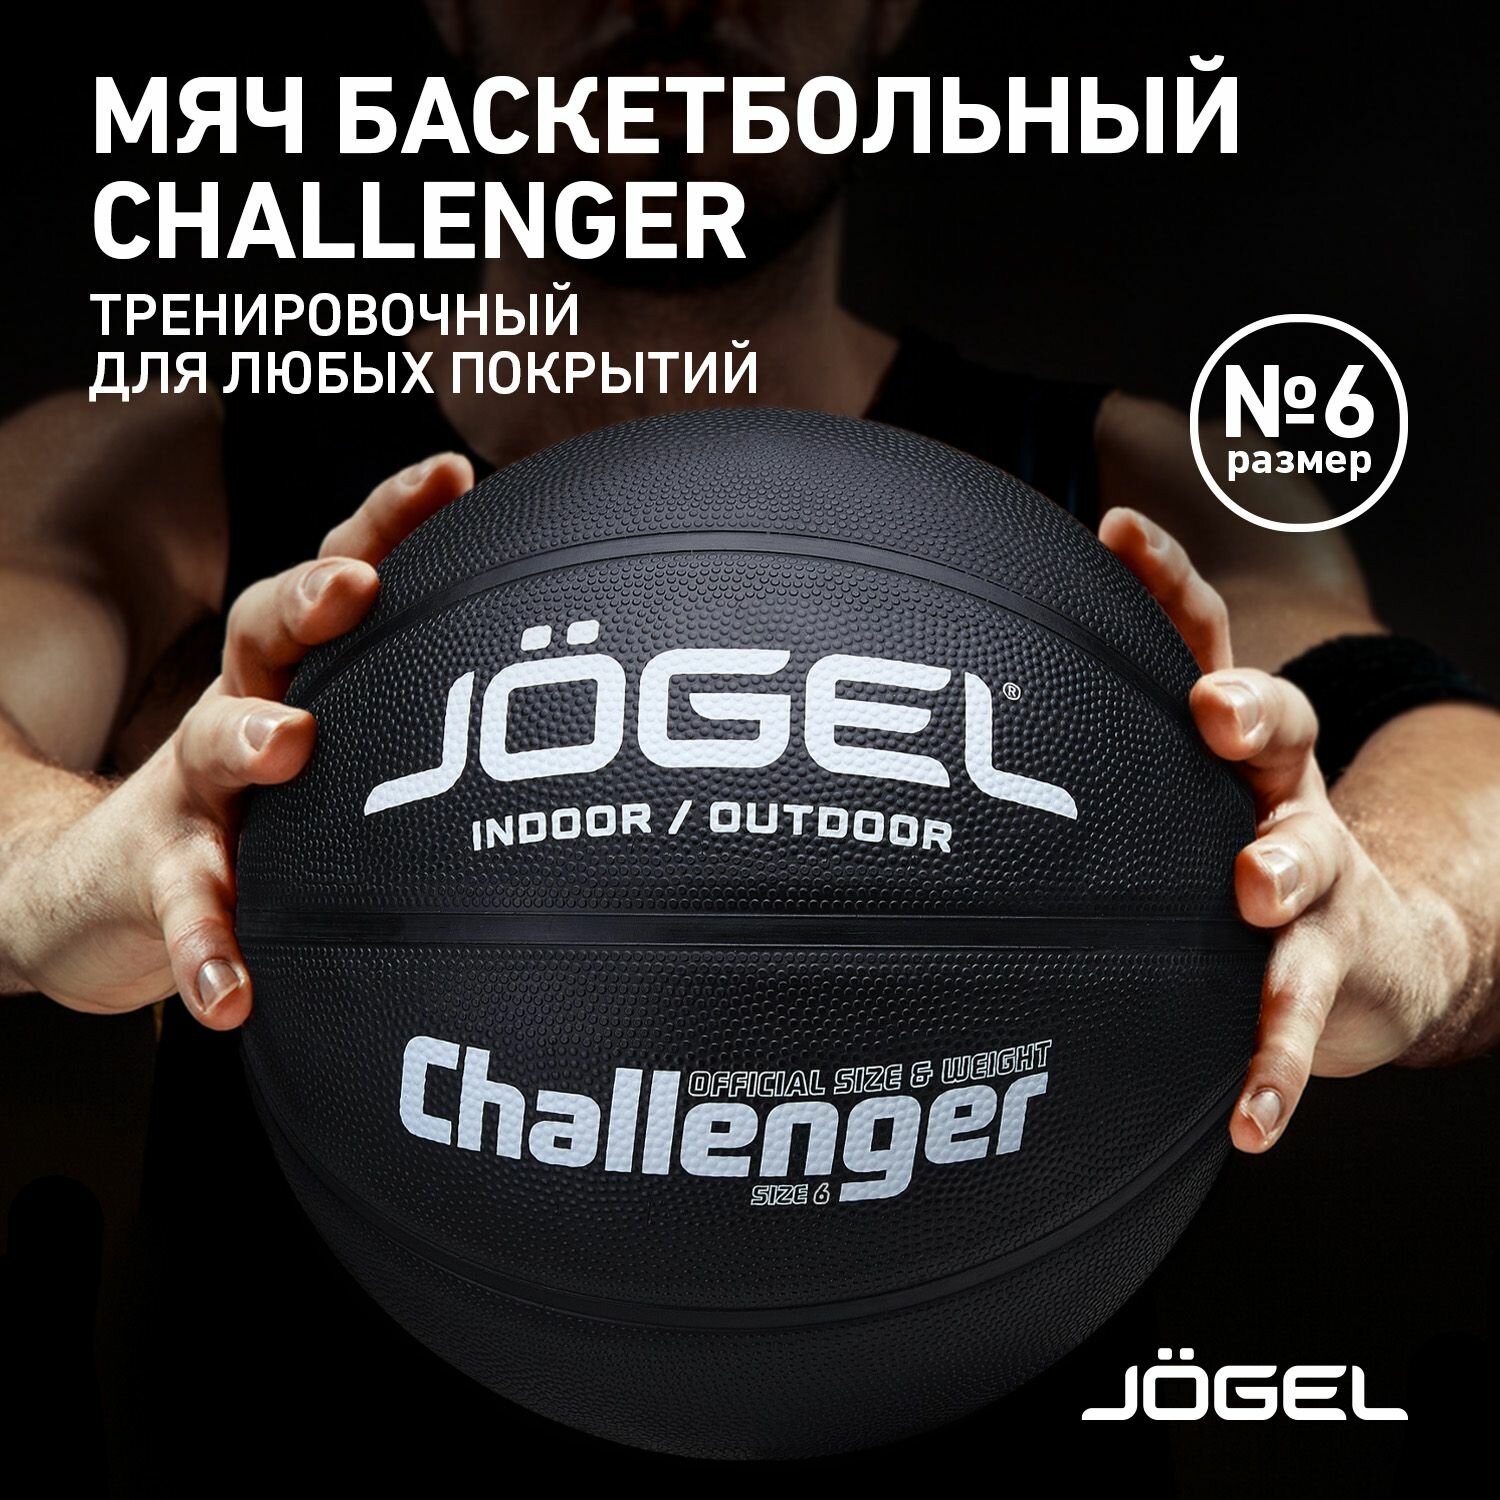 Баскетбольный мяч Jogel Challenger, цвет черный, размер 6